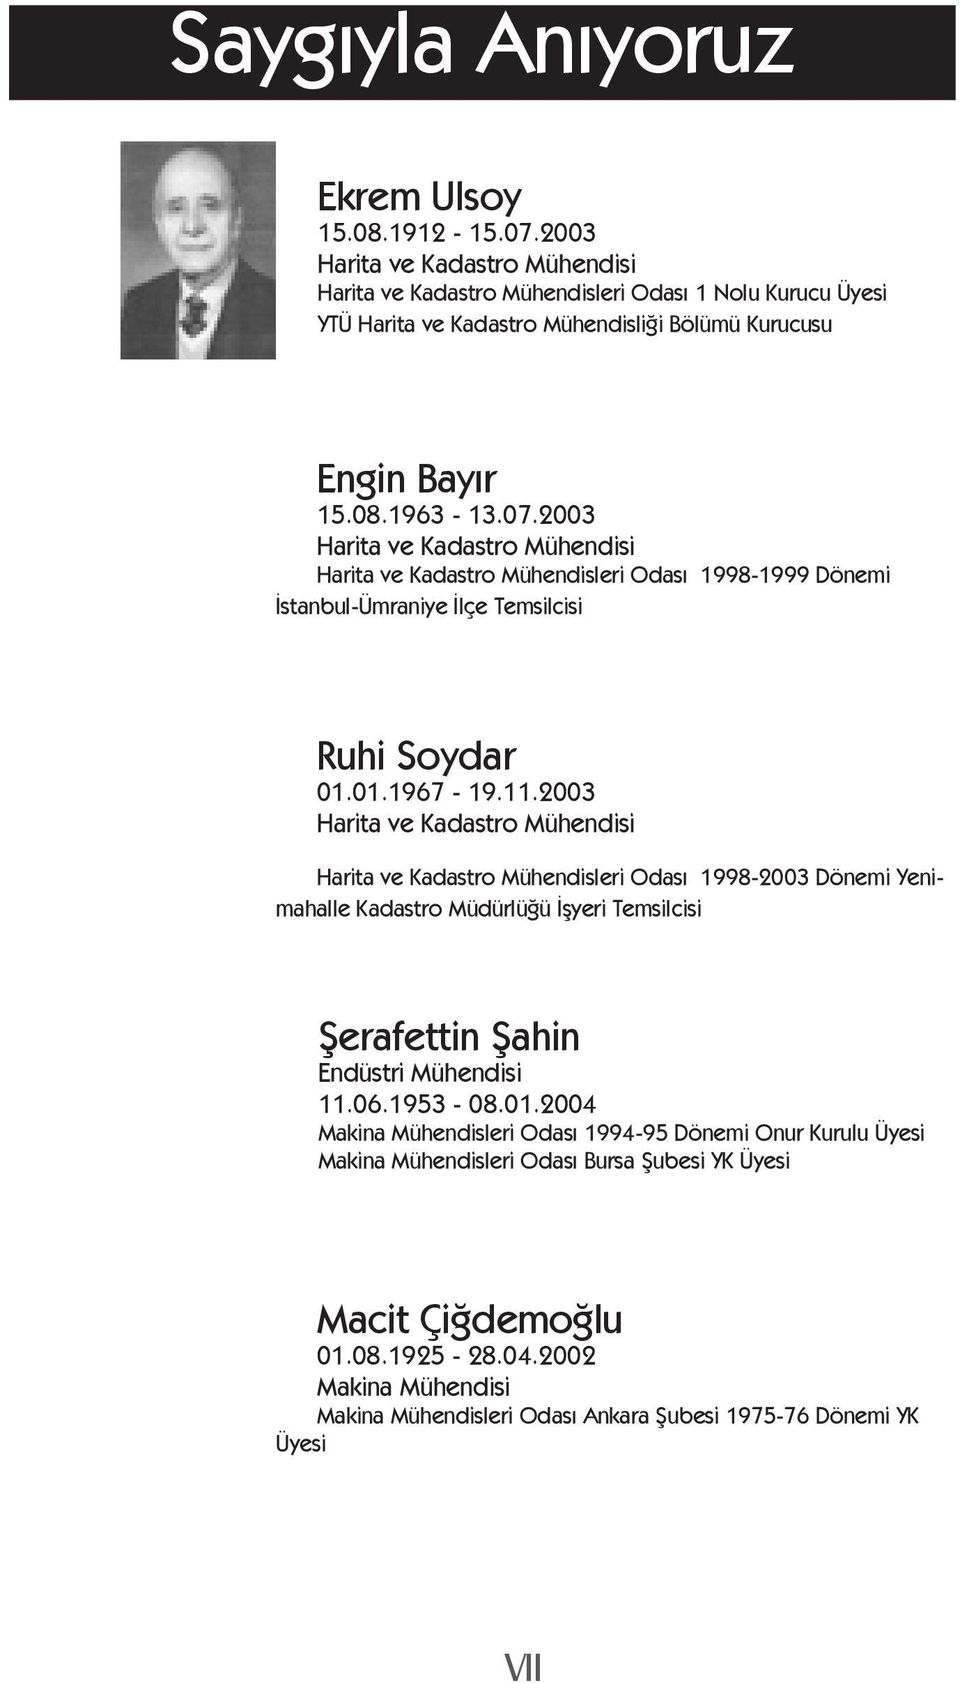 2003 Harita ve Kadastro Mühendisi Harita ve Kadastro Mühendisleri Odası 1998-1999 Dönemi İstanbul-Ümraniye İlçe Temsilcisi Ruhi Soydar 01.01.1967-19.11.